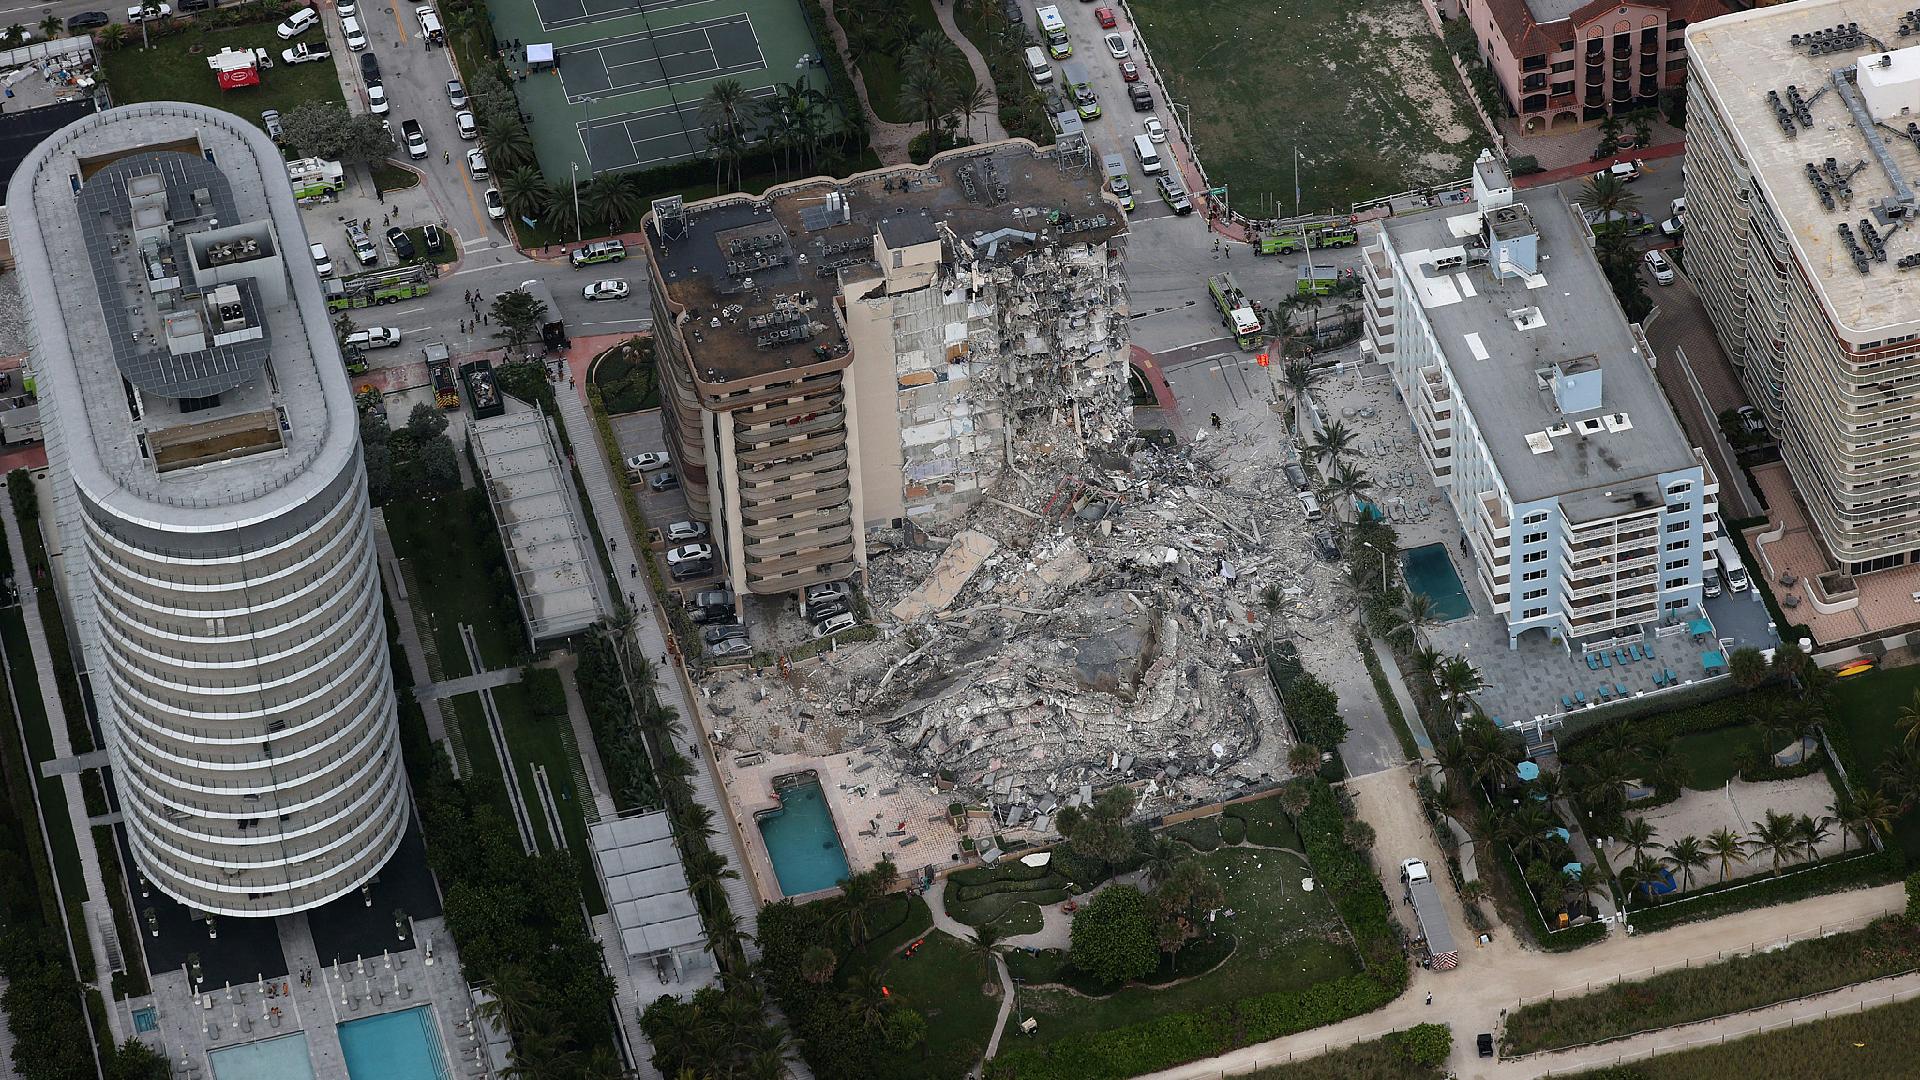 Miami condo building collapse: At least 4 dead, 159 still missing - CGTN